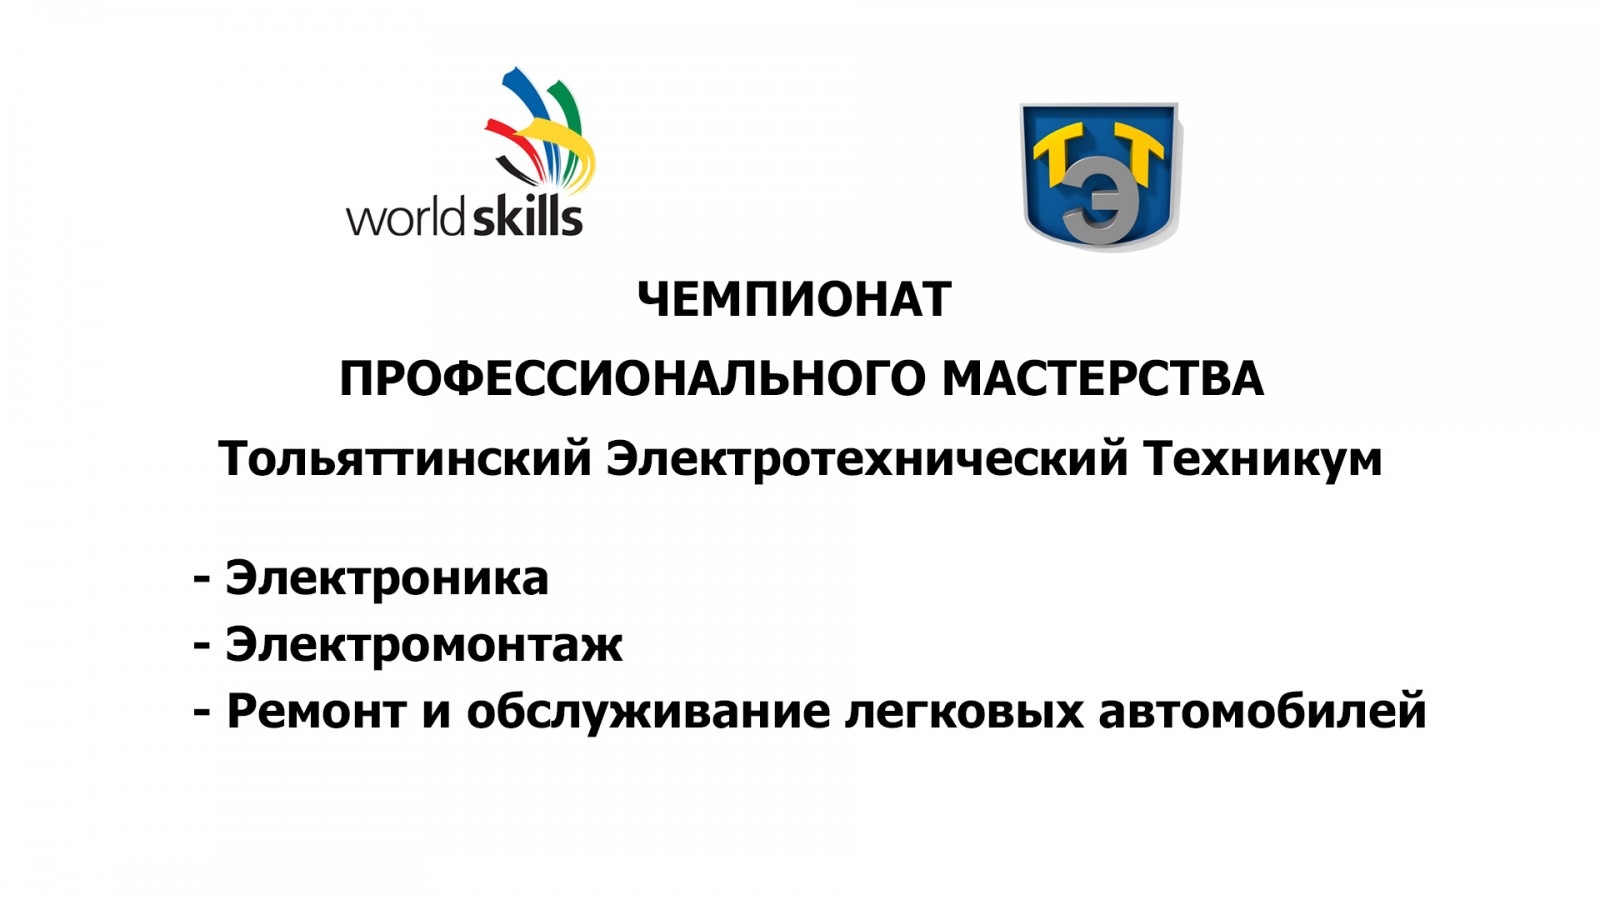 Отборочный чемпионат профессионального мастерства по стандартам World Skills Russia